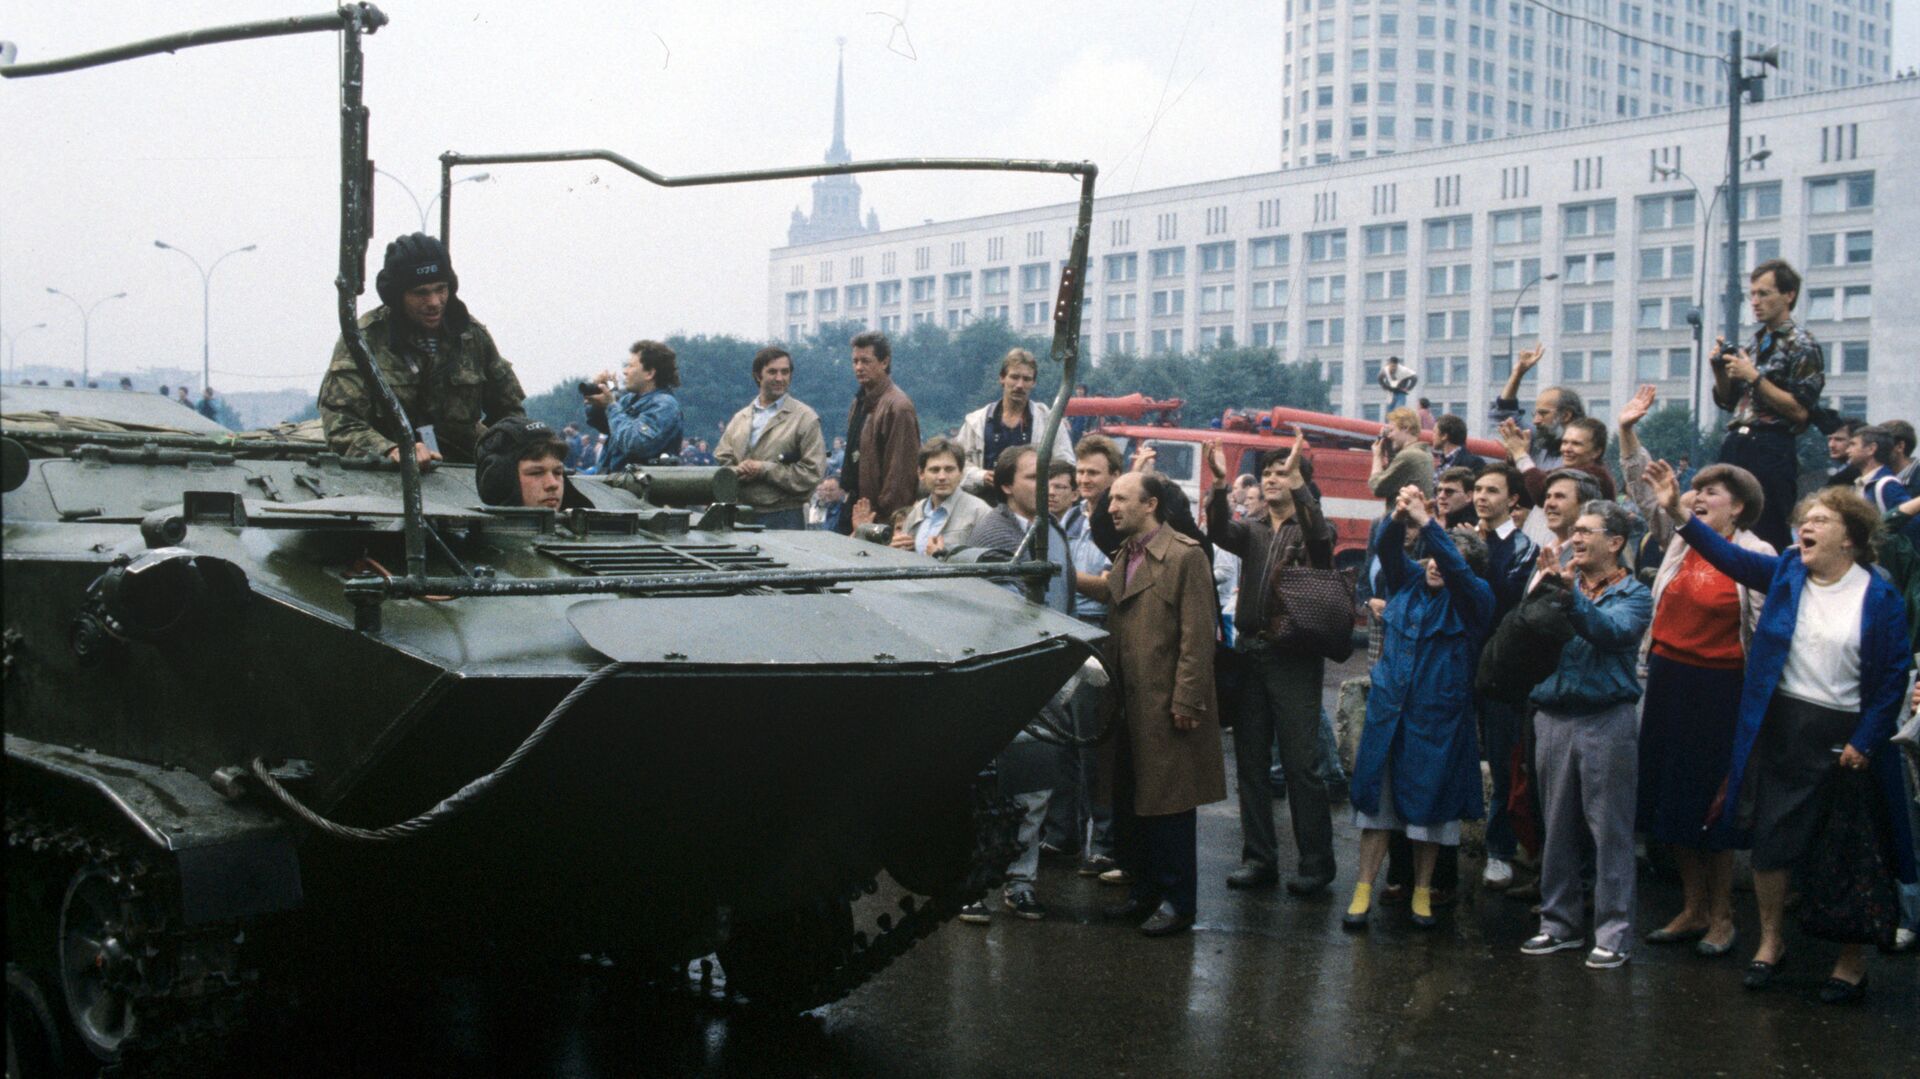 Воинские подразделения, перешедшие на сторону российского парламента, перед зданием Верховного Совета РСФСР. - Sputnik Արմենիա, 1920, 20.08.2021